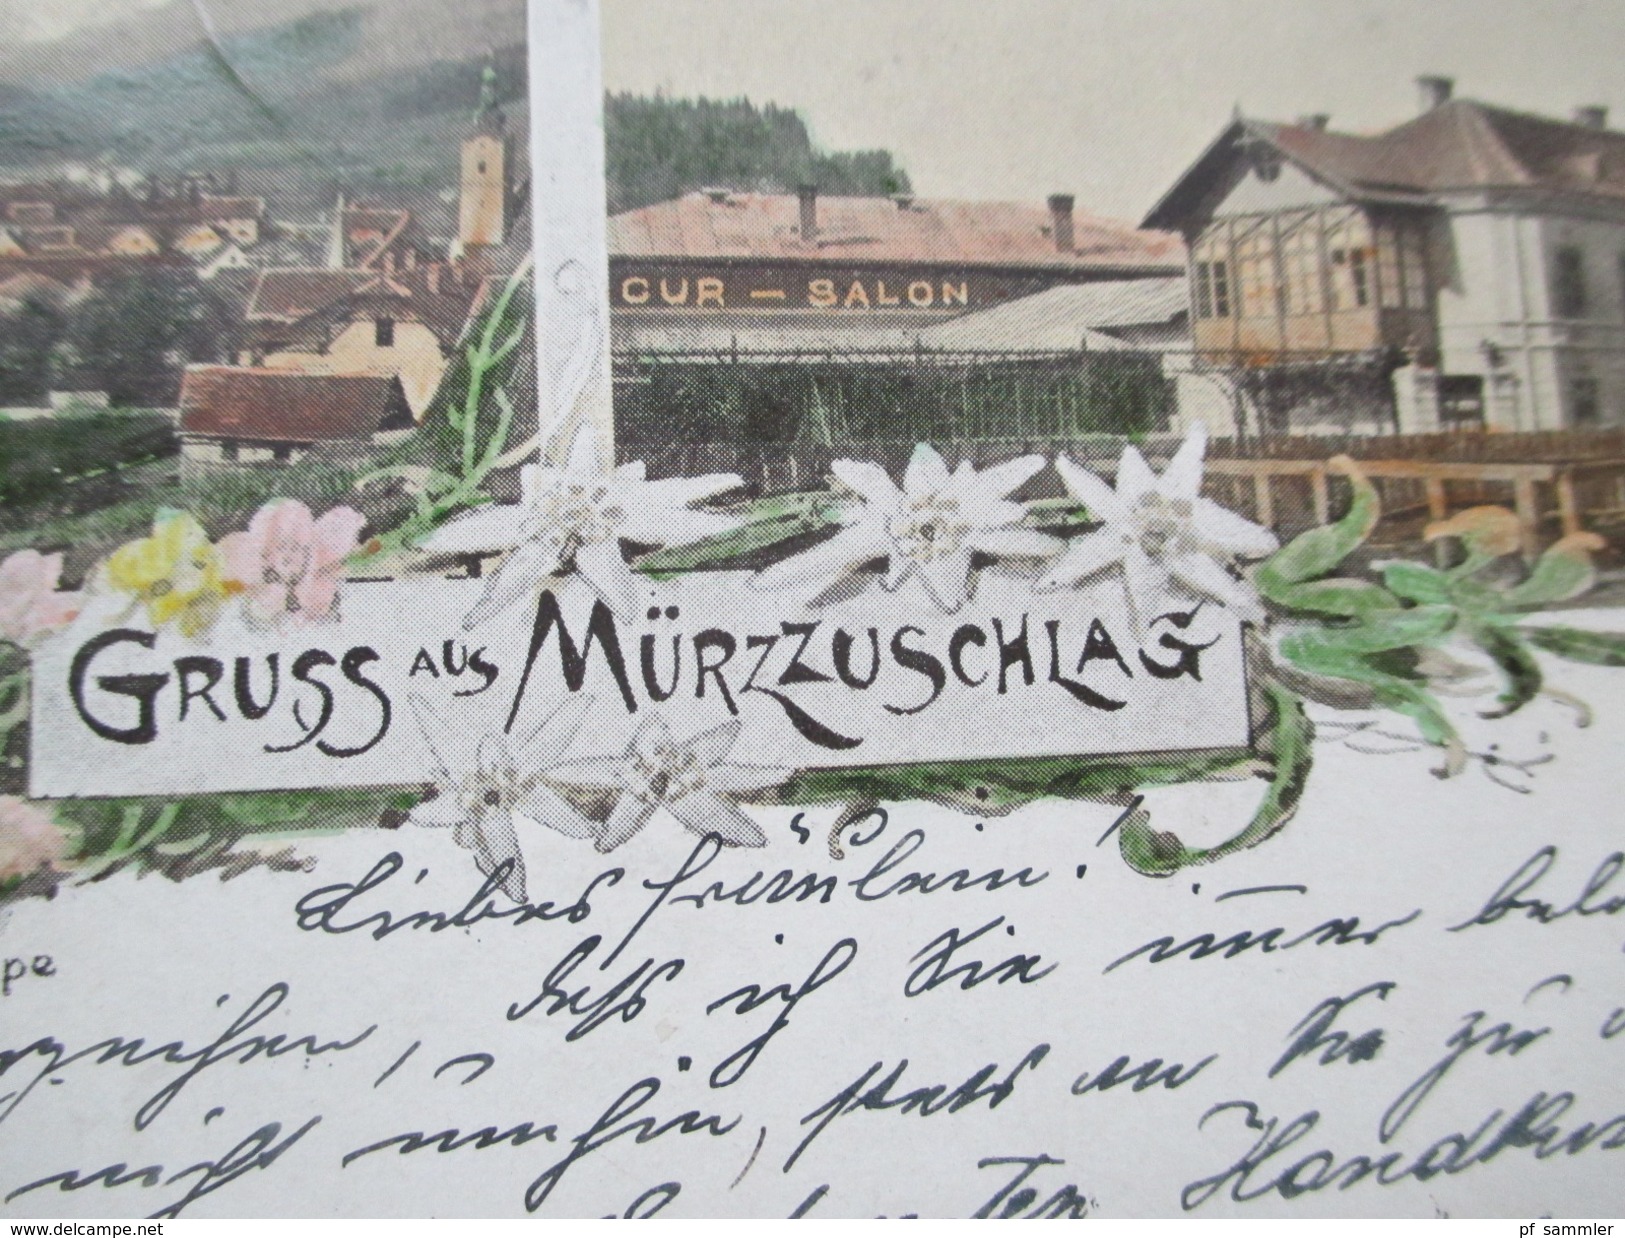 AK / Lithografie 1898 Gruss Aus Mürzzuschlag. Mehrbildkarte Kurhaus / Schneealpe. Verlag V. M. Riegler. Strichstempel - Mürzzuschlag